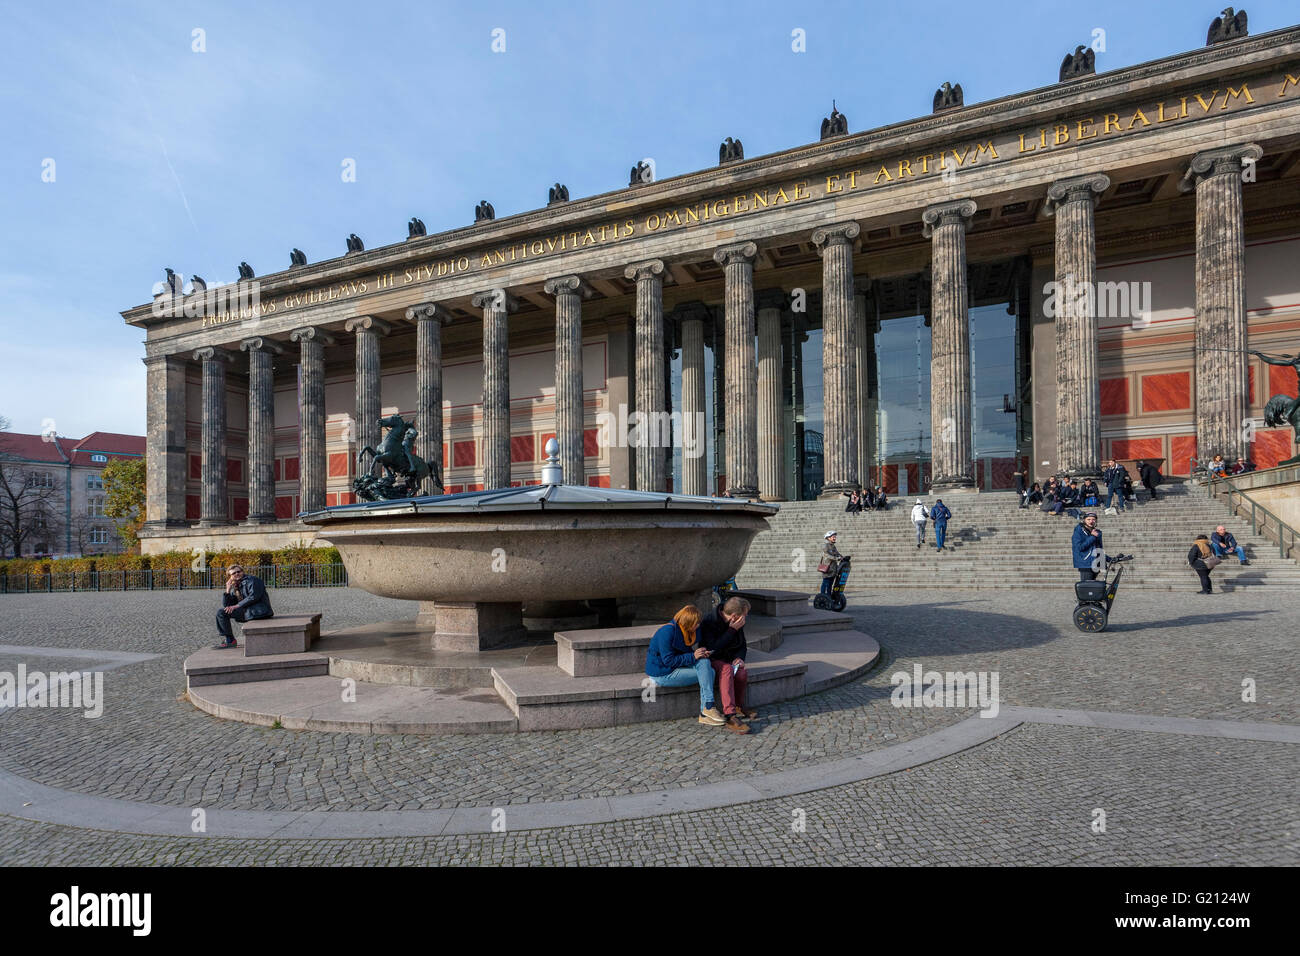 Altes Museum et Lustgarten sur Museumsinsel (île des musées), 1828 L'architecte Karl Friedrich Schinkel, Berlin Allemagne Banque D'Images